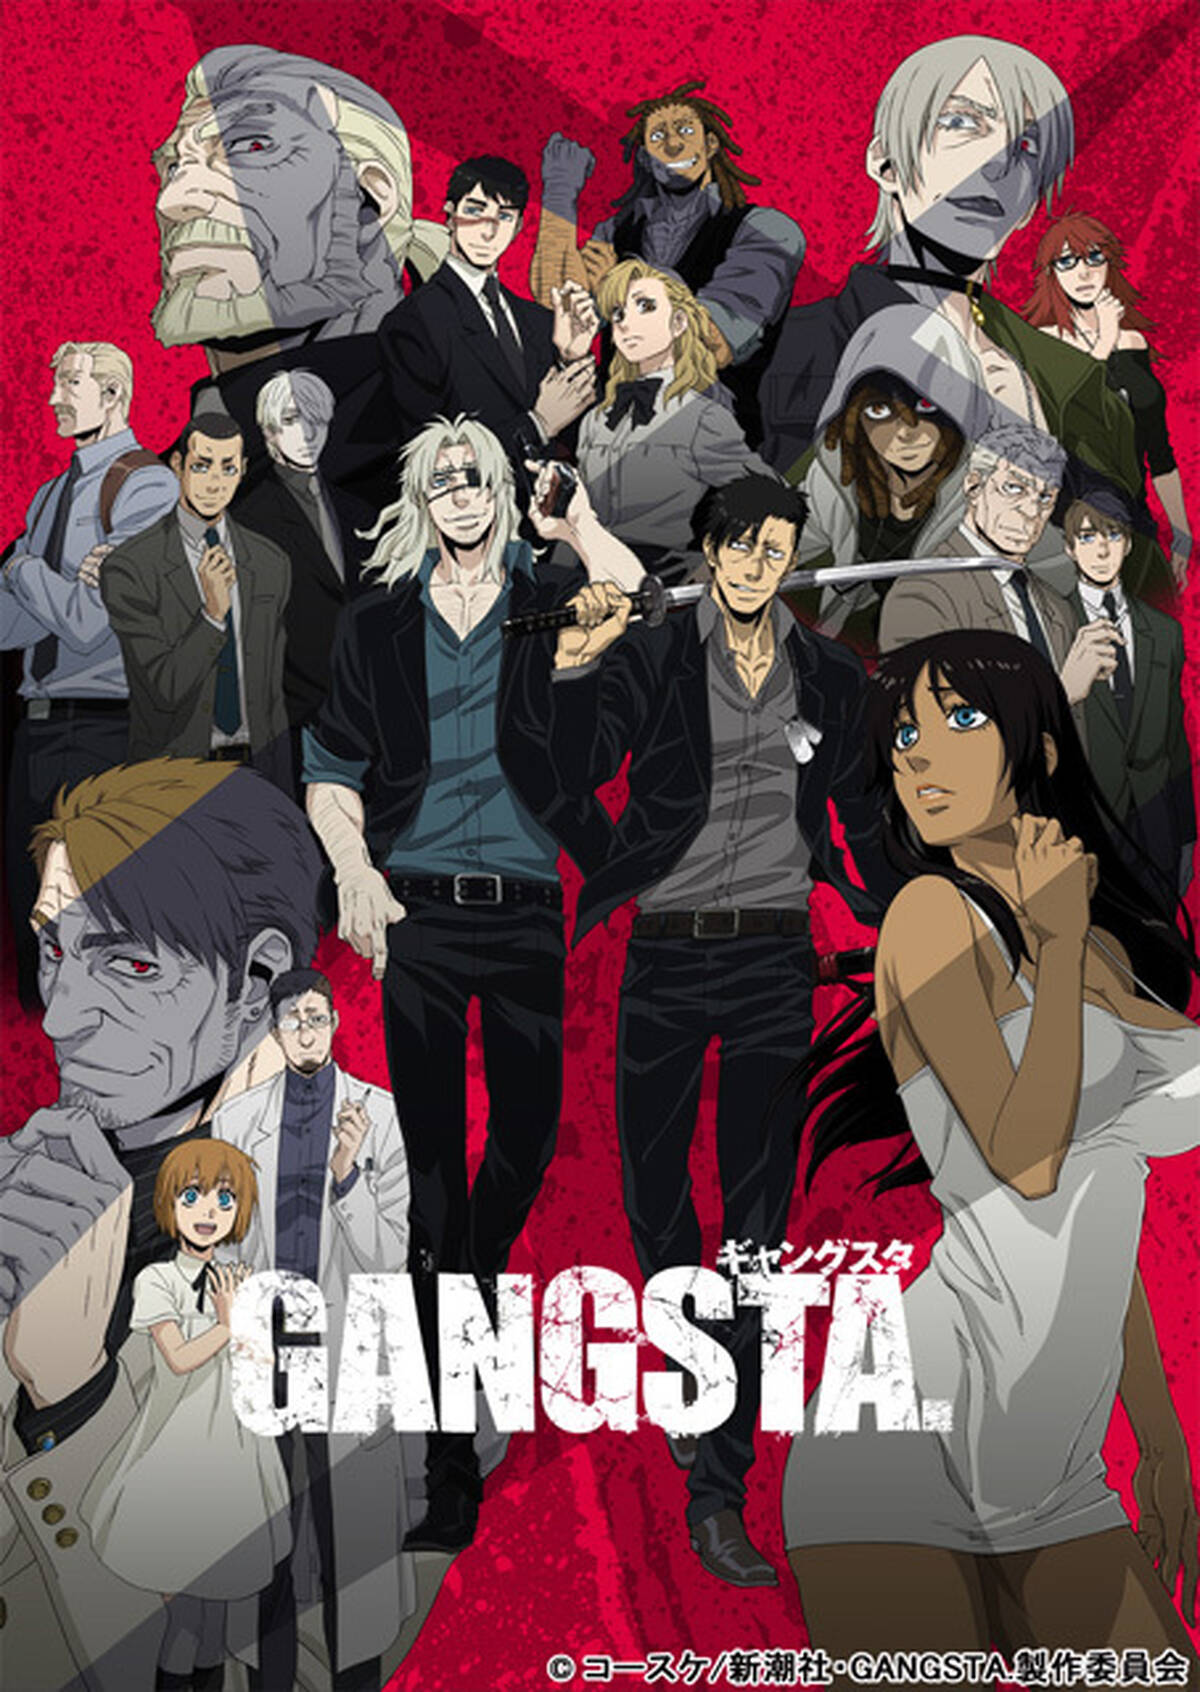 アニメ Gangsta Blu Ray Dvd発売再開を記念して上映会を開催決定 諏訪部順一 津田健次郎も出演予定 アキバ総研